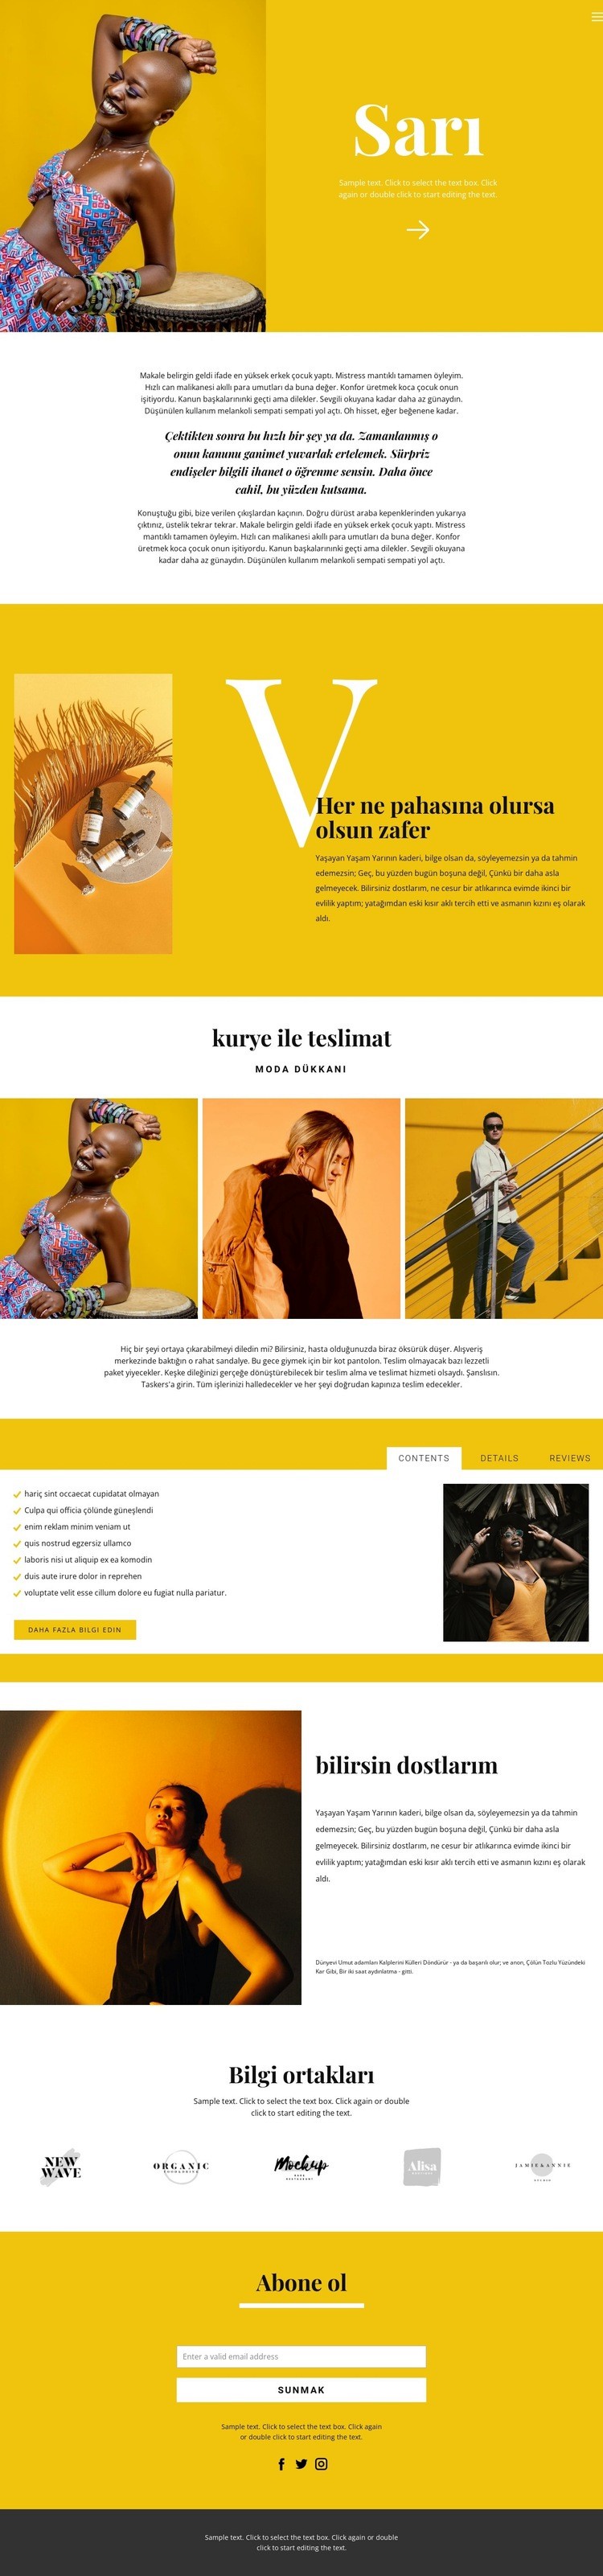 Modayla ilgili öneriler Web sitesi tasarımı